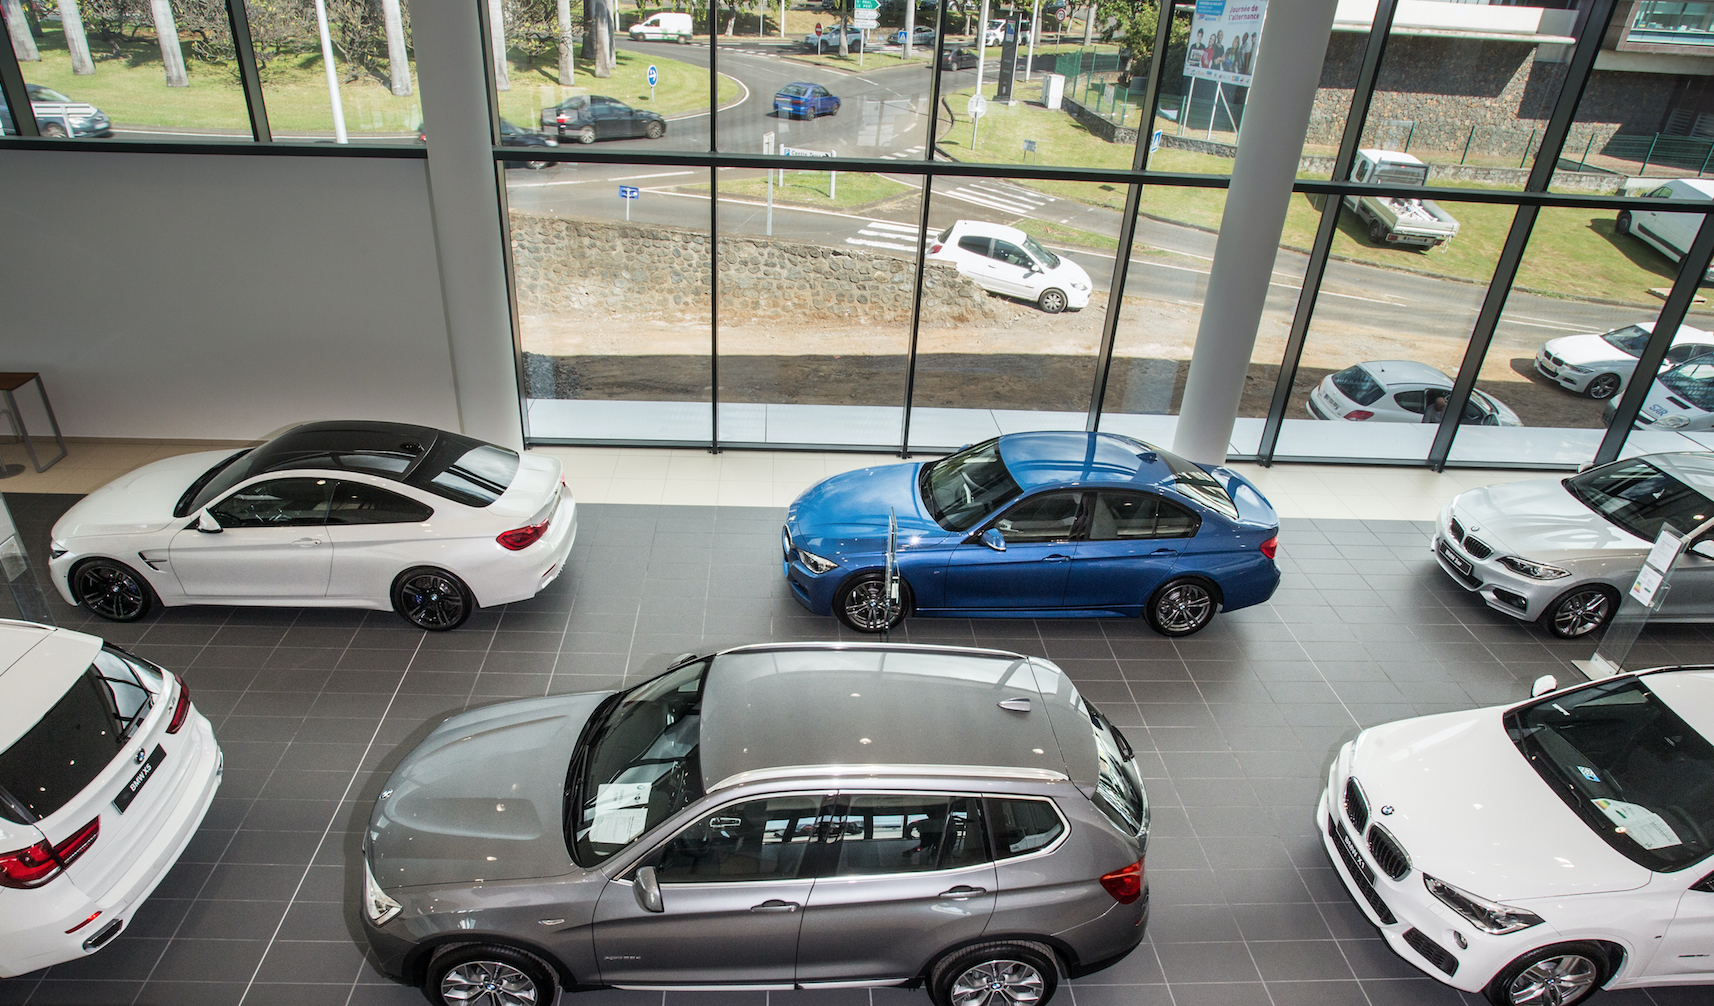 Le show-room d'exposition de BMW peut contenir 12 véhicules